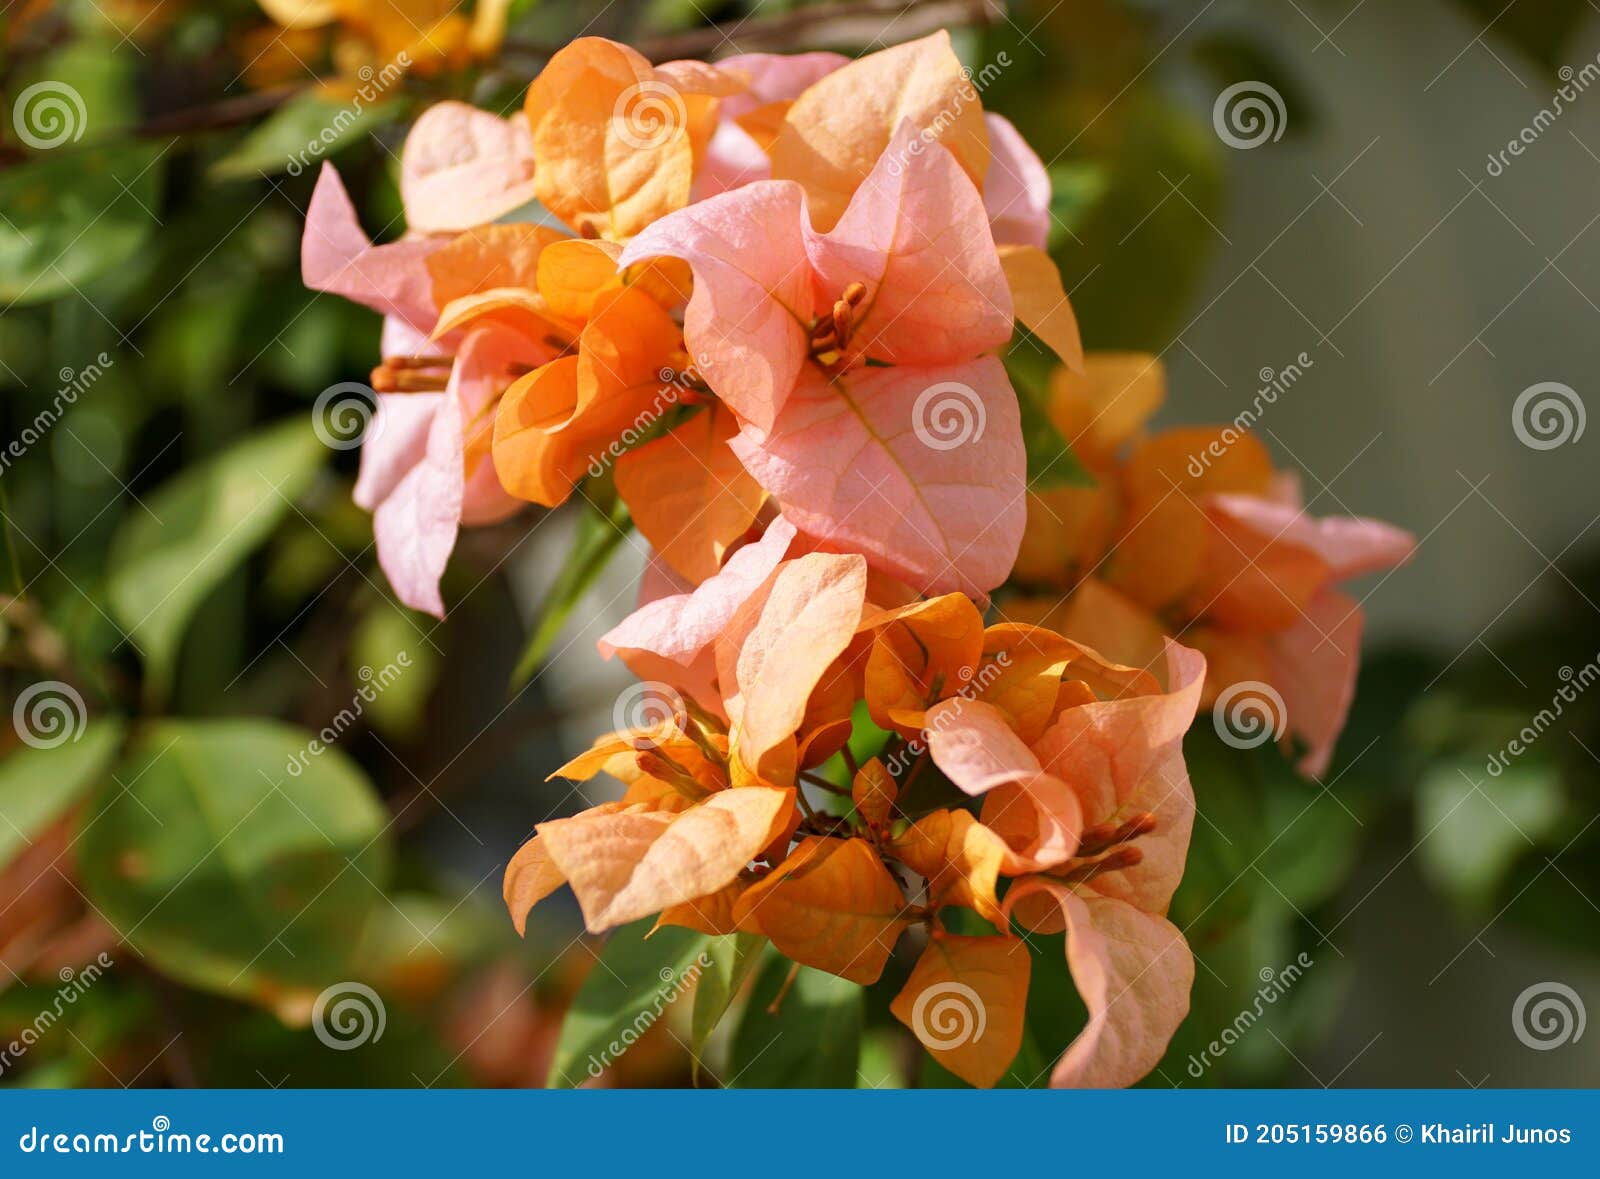 rosa preciosa, a pink and orange color of bougainvillea flower